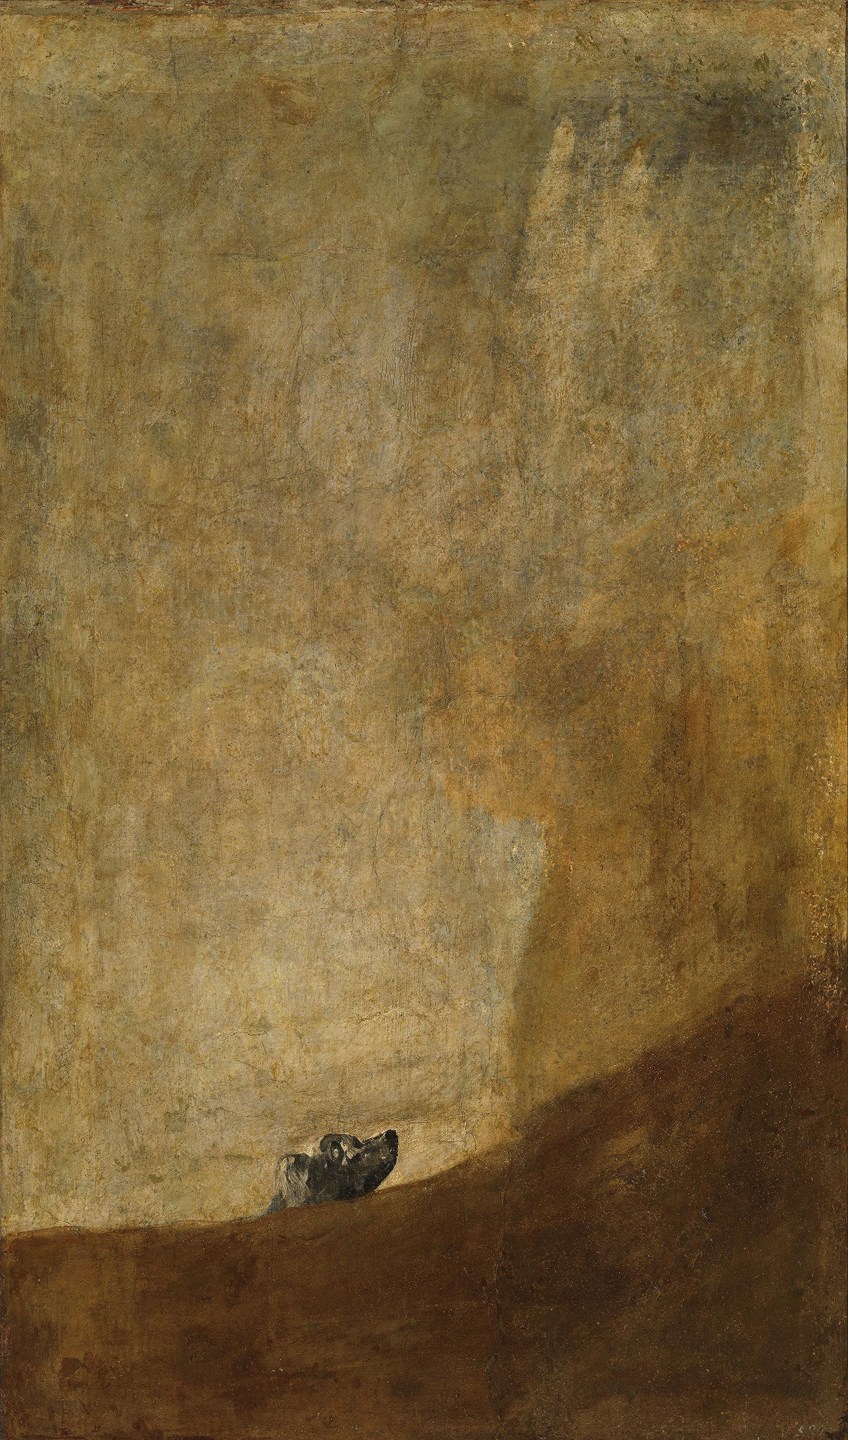 Dark Paintings of Francisco Goya